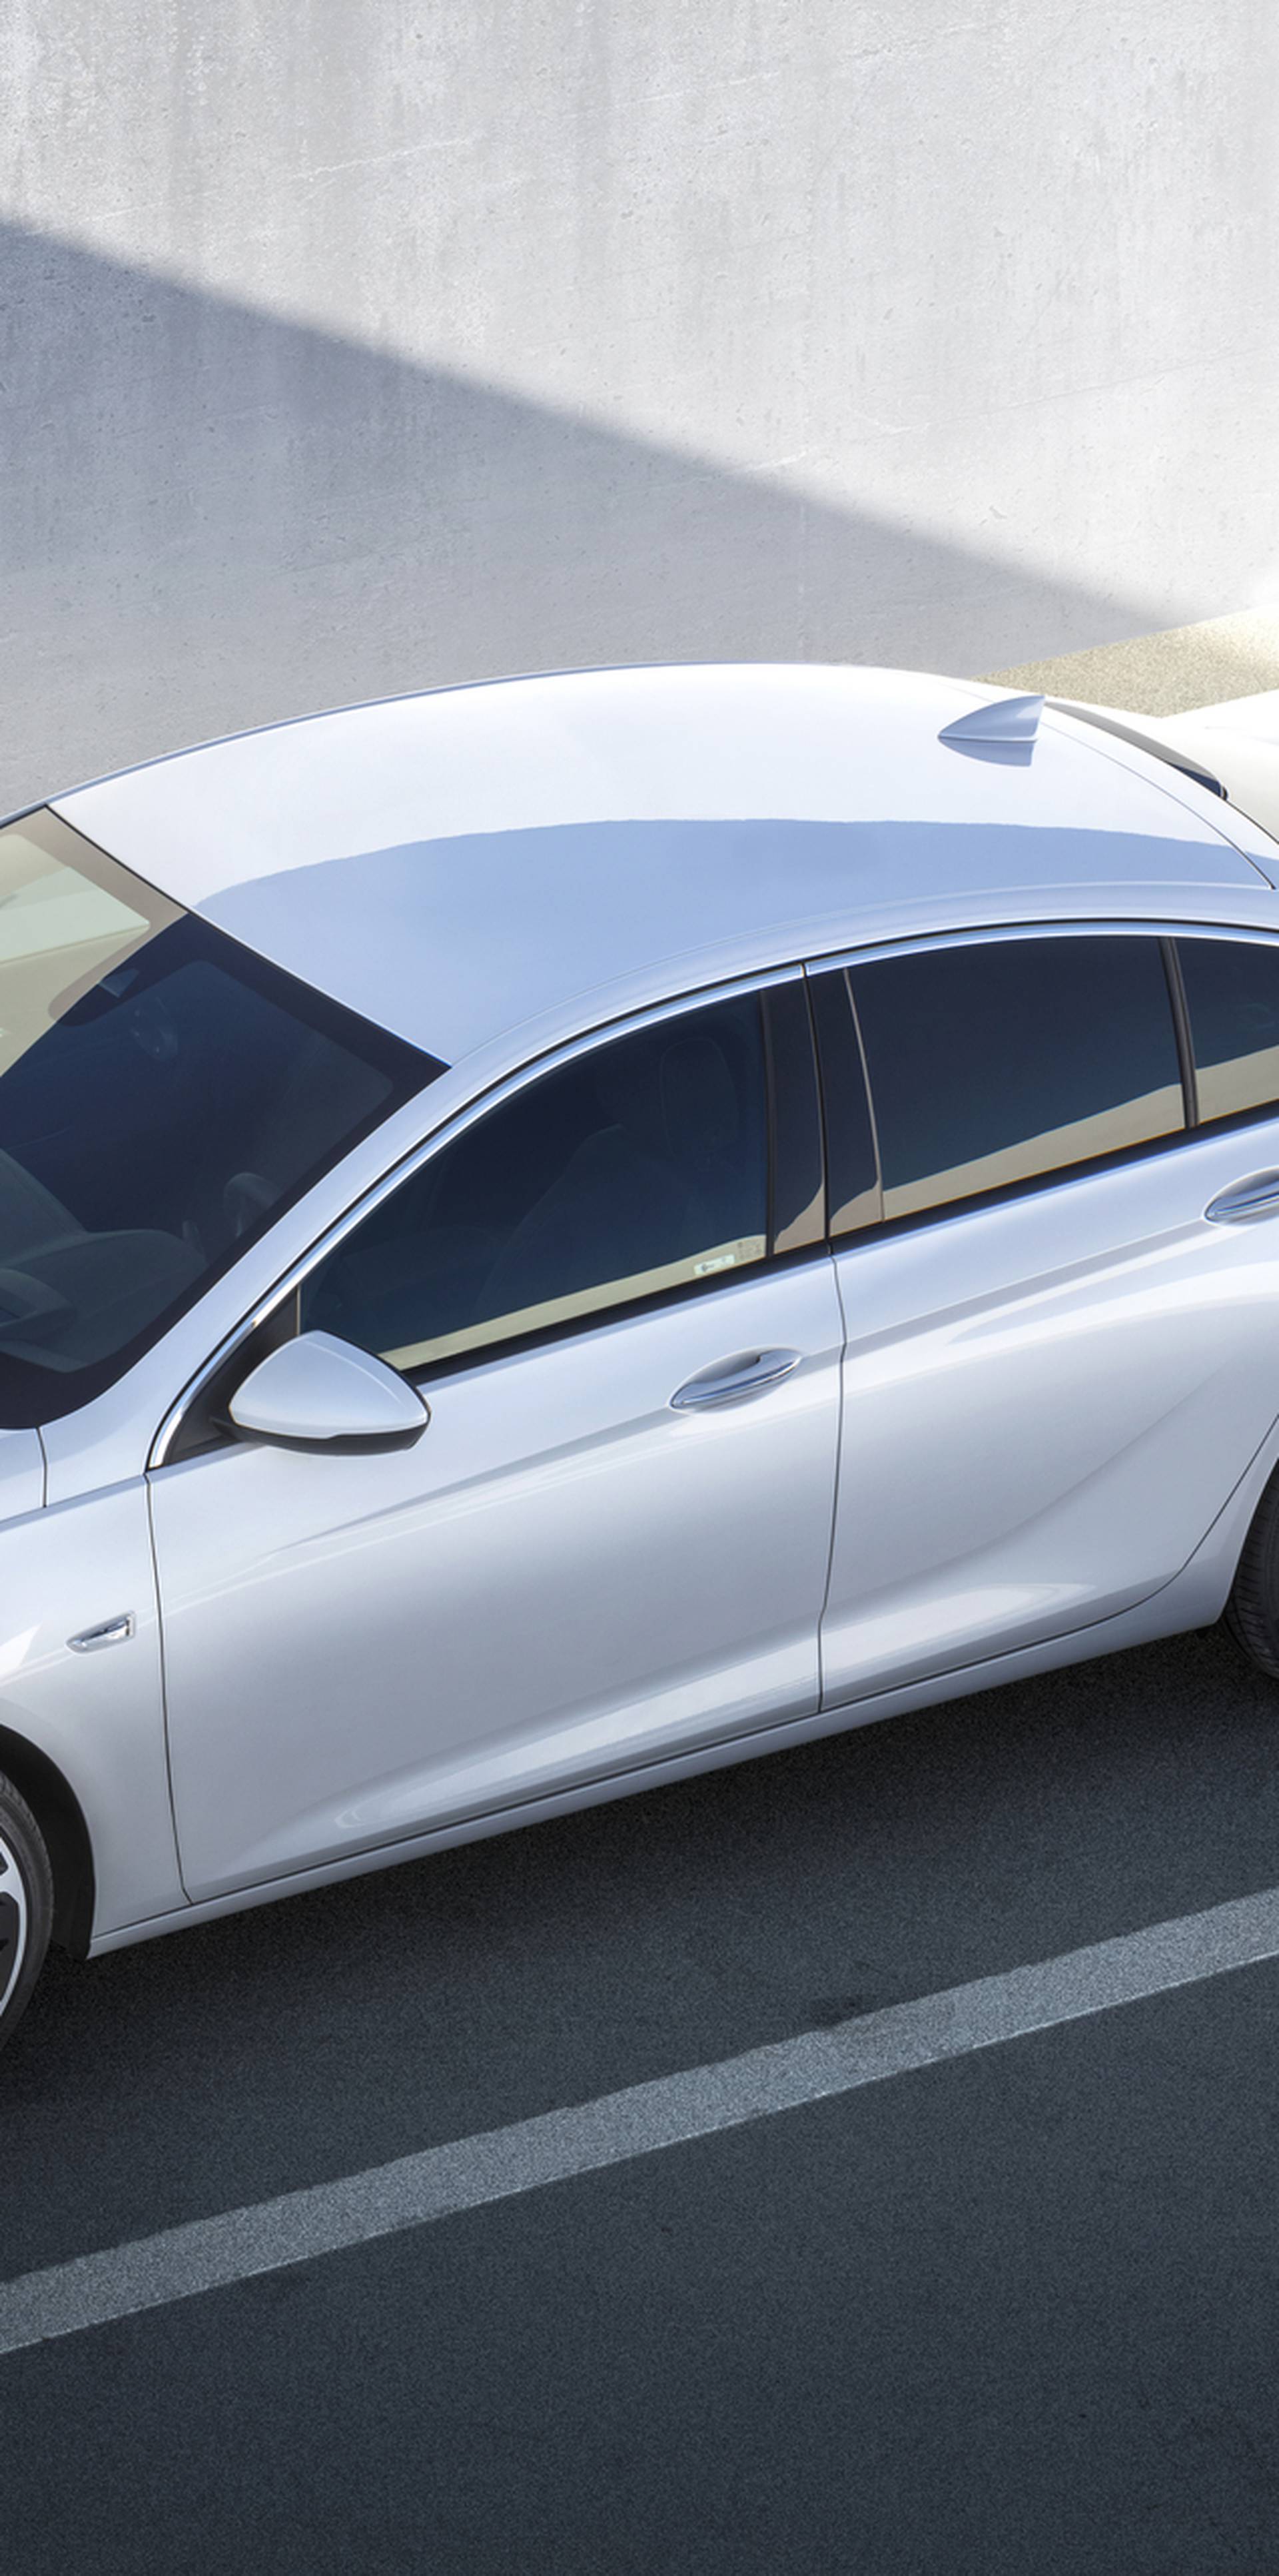 Opel razotkrio novu Insigniju: Ovo je prava sportska ljepotica